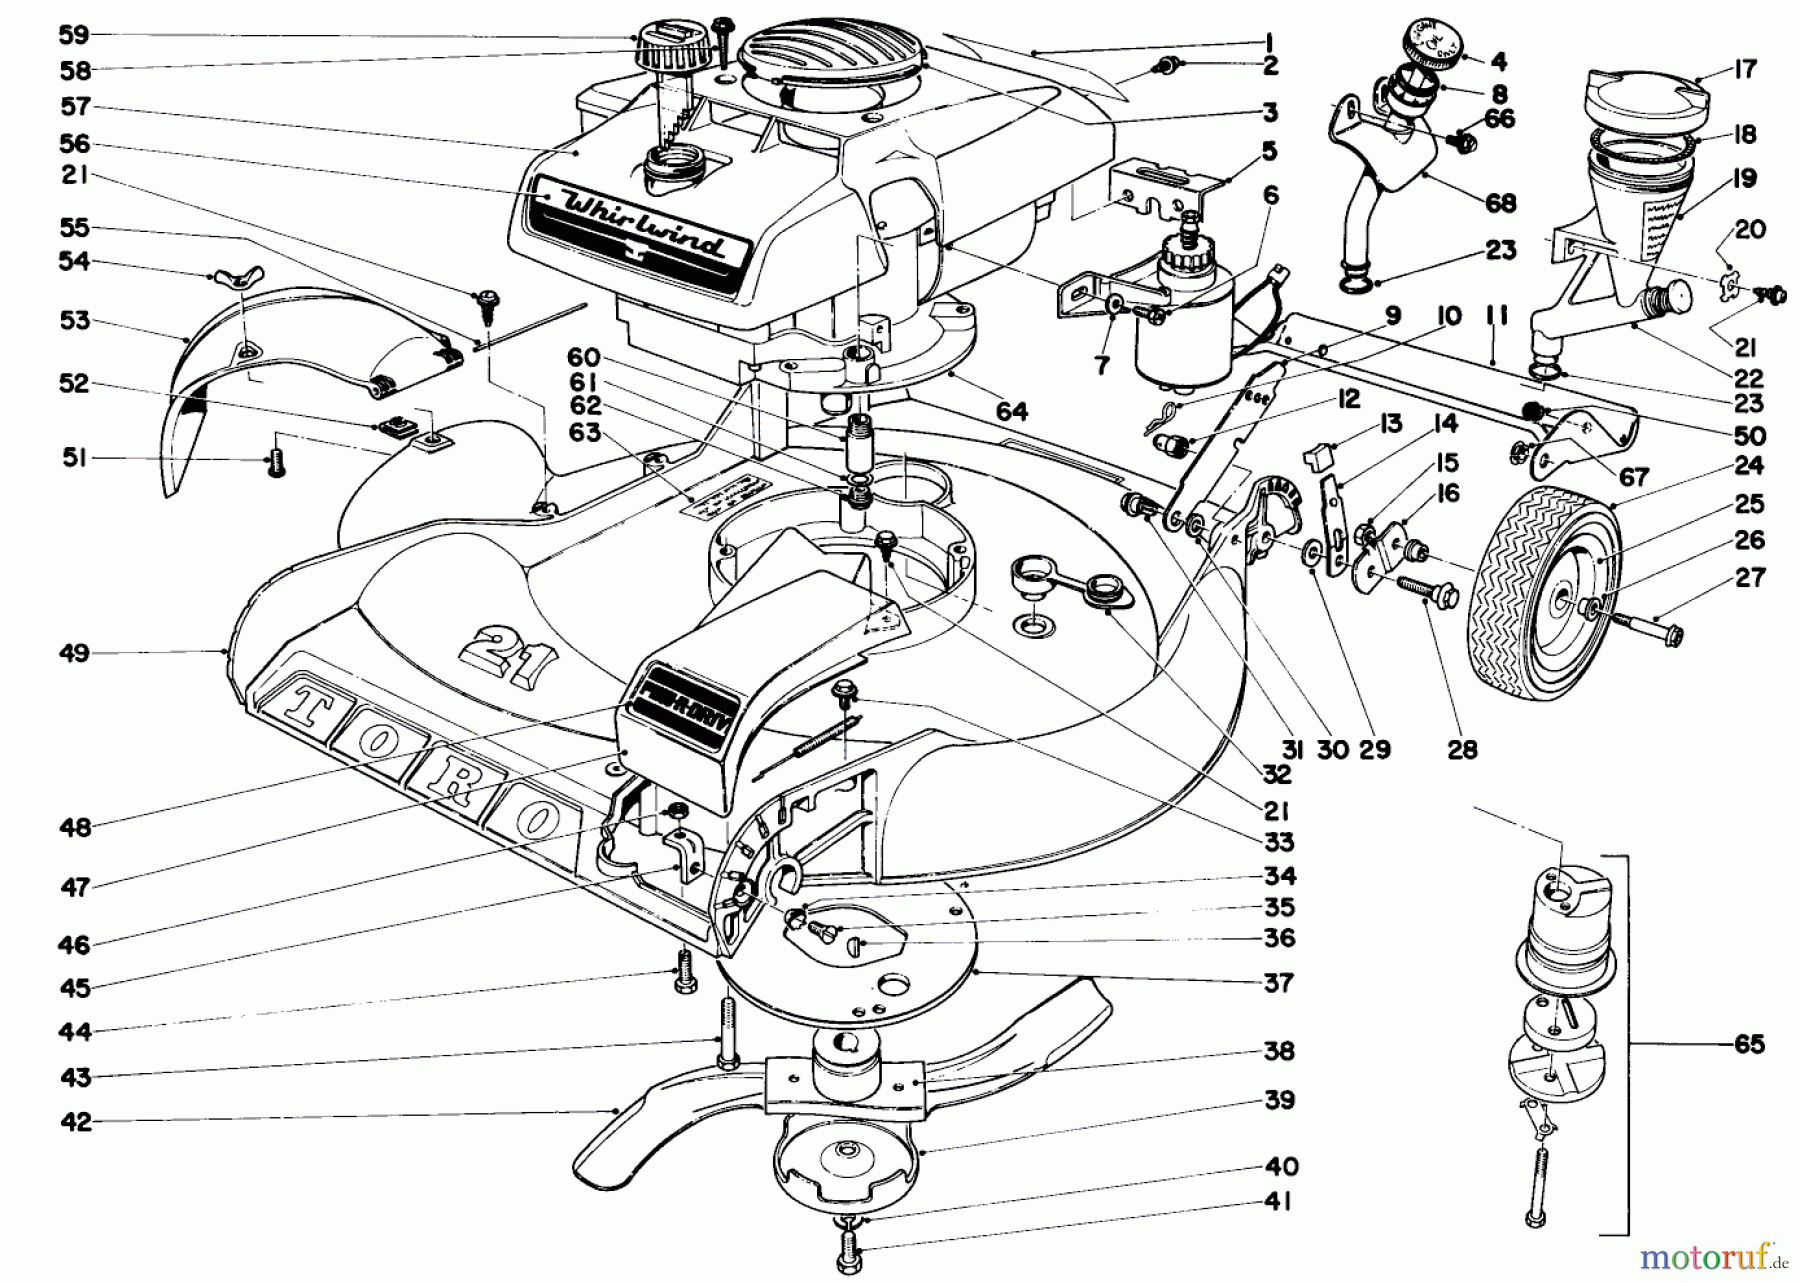  Toro Neu Mowers, Walk-Behind Seite 2 21104 - Toro Whirlwind Lawnmower, 1970 (0000001-0999999) 21